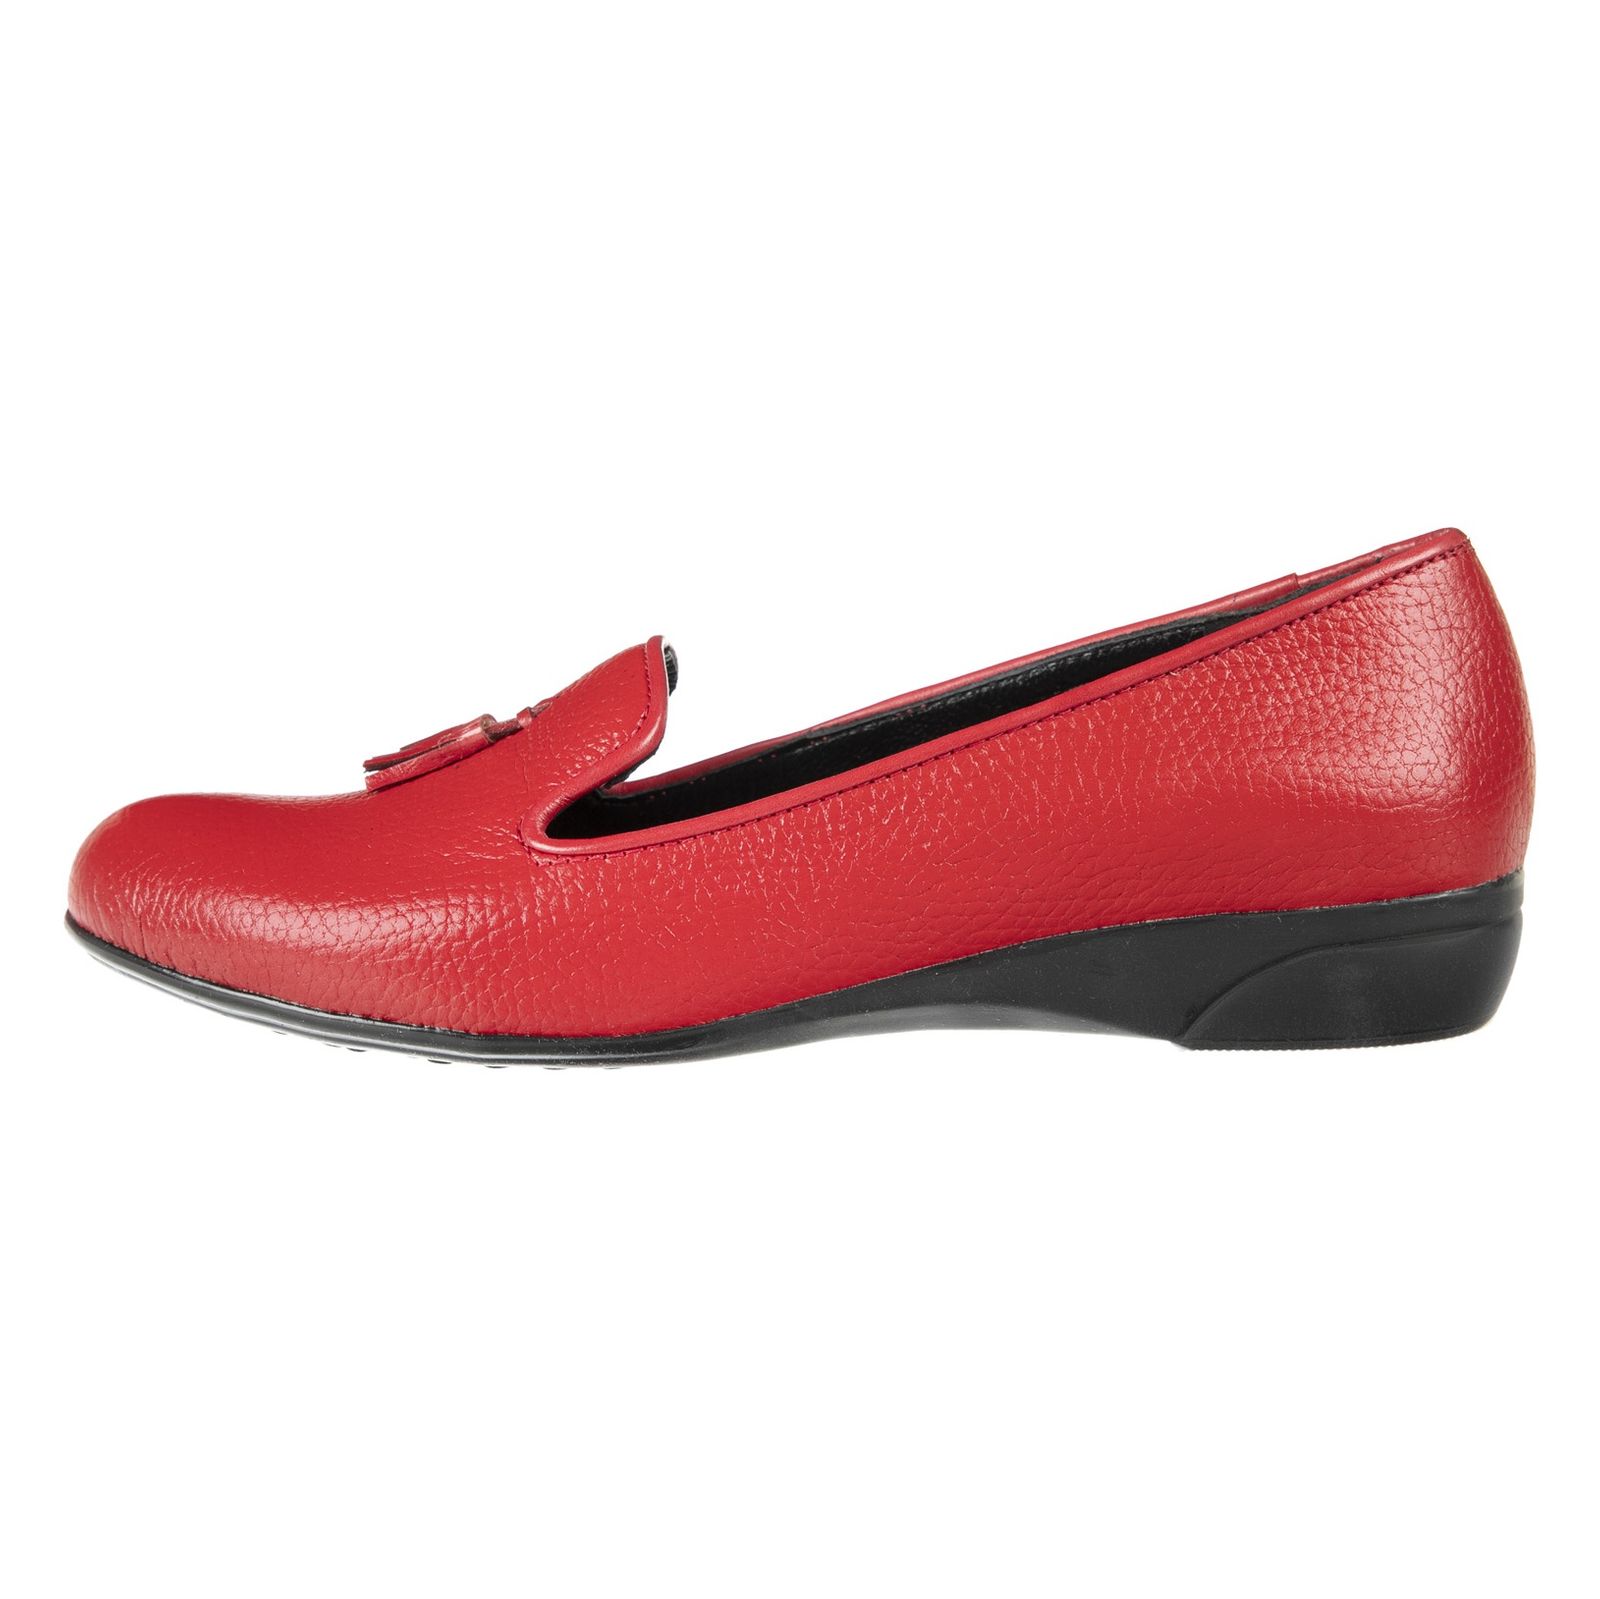 کفش زنانه دلفارد مدل 5183A500-102 - قرمز - 2